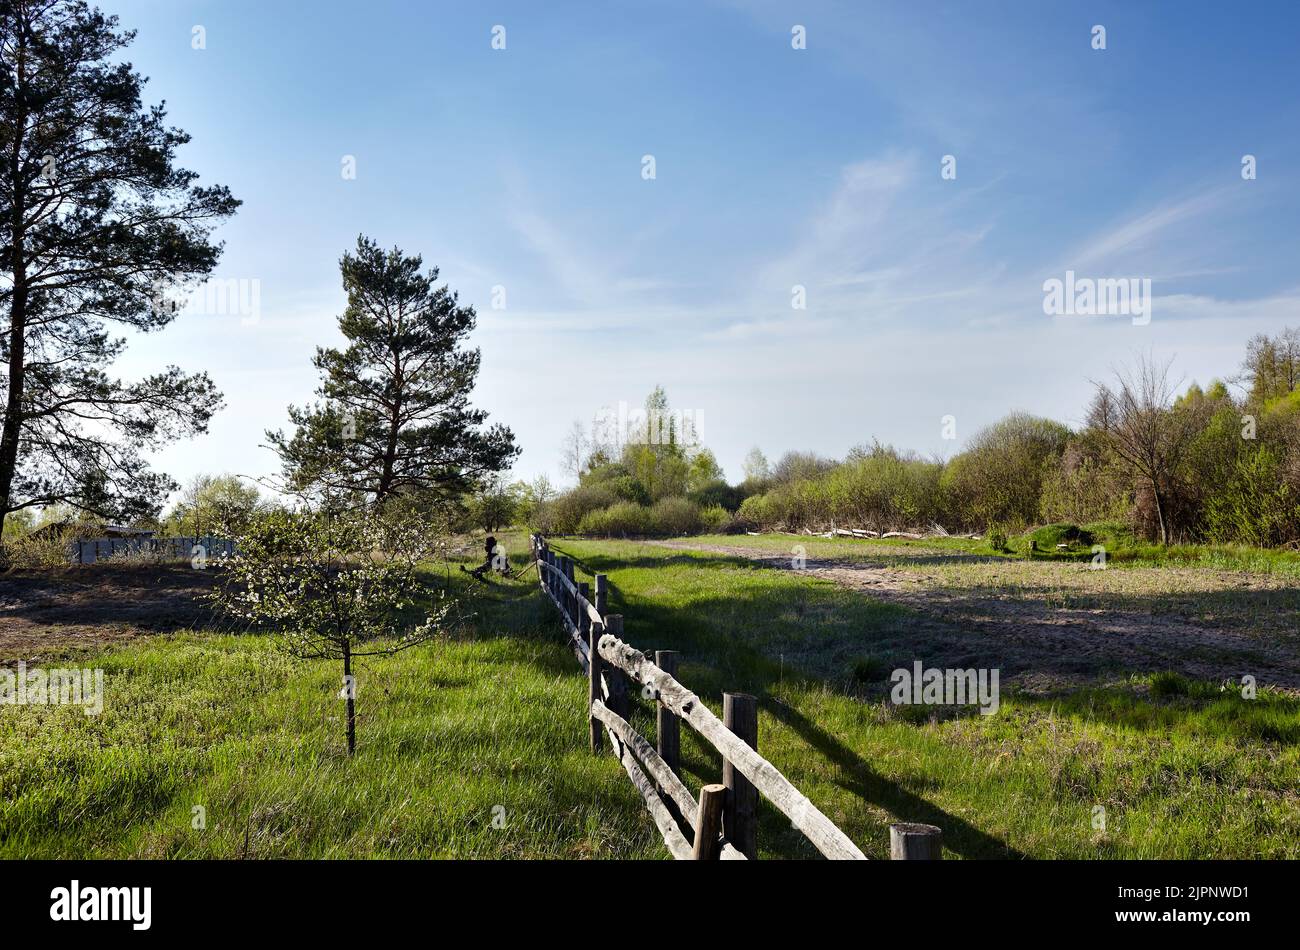 Vecchio cortale di legno contro un cielo blu in una giornata di sole. Paddock in erba su terreno agricolo con recinzione in legno su sfondo forestale denso. Vista rurale prato e fen Foto Stock